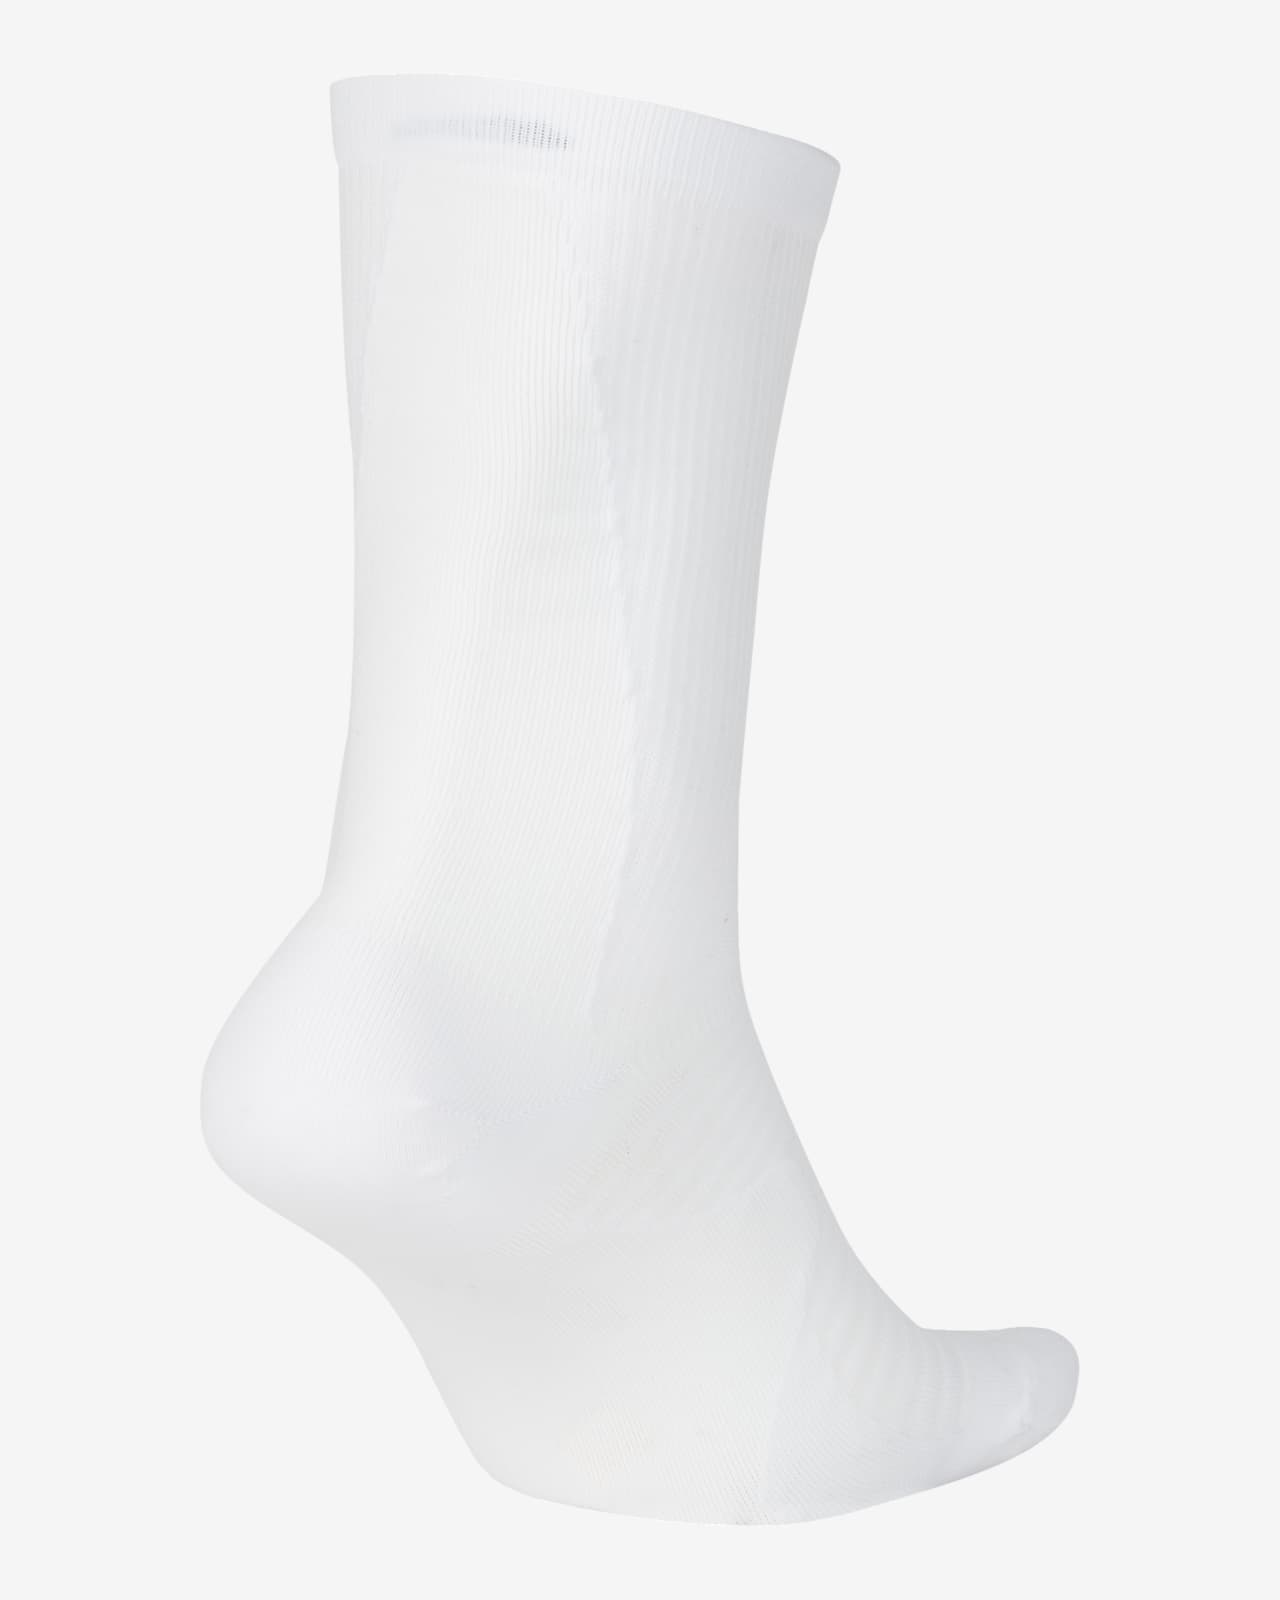 nike running socks white